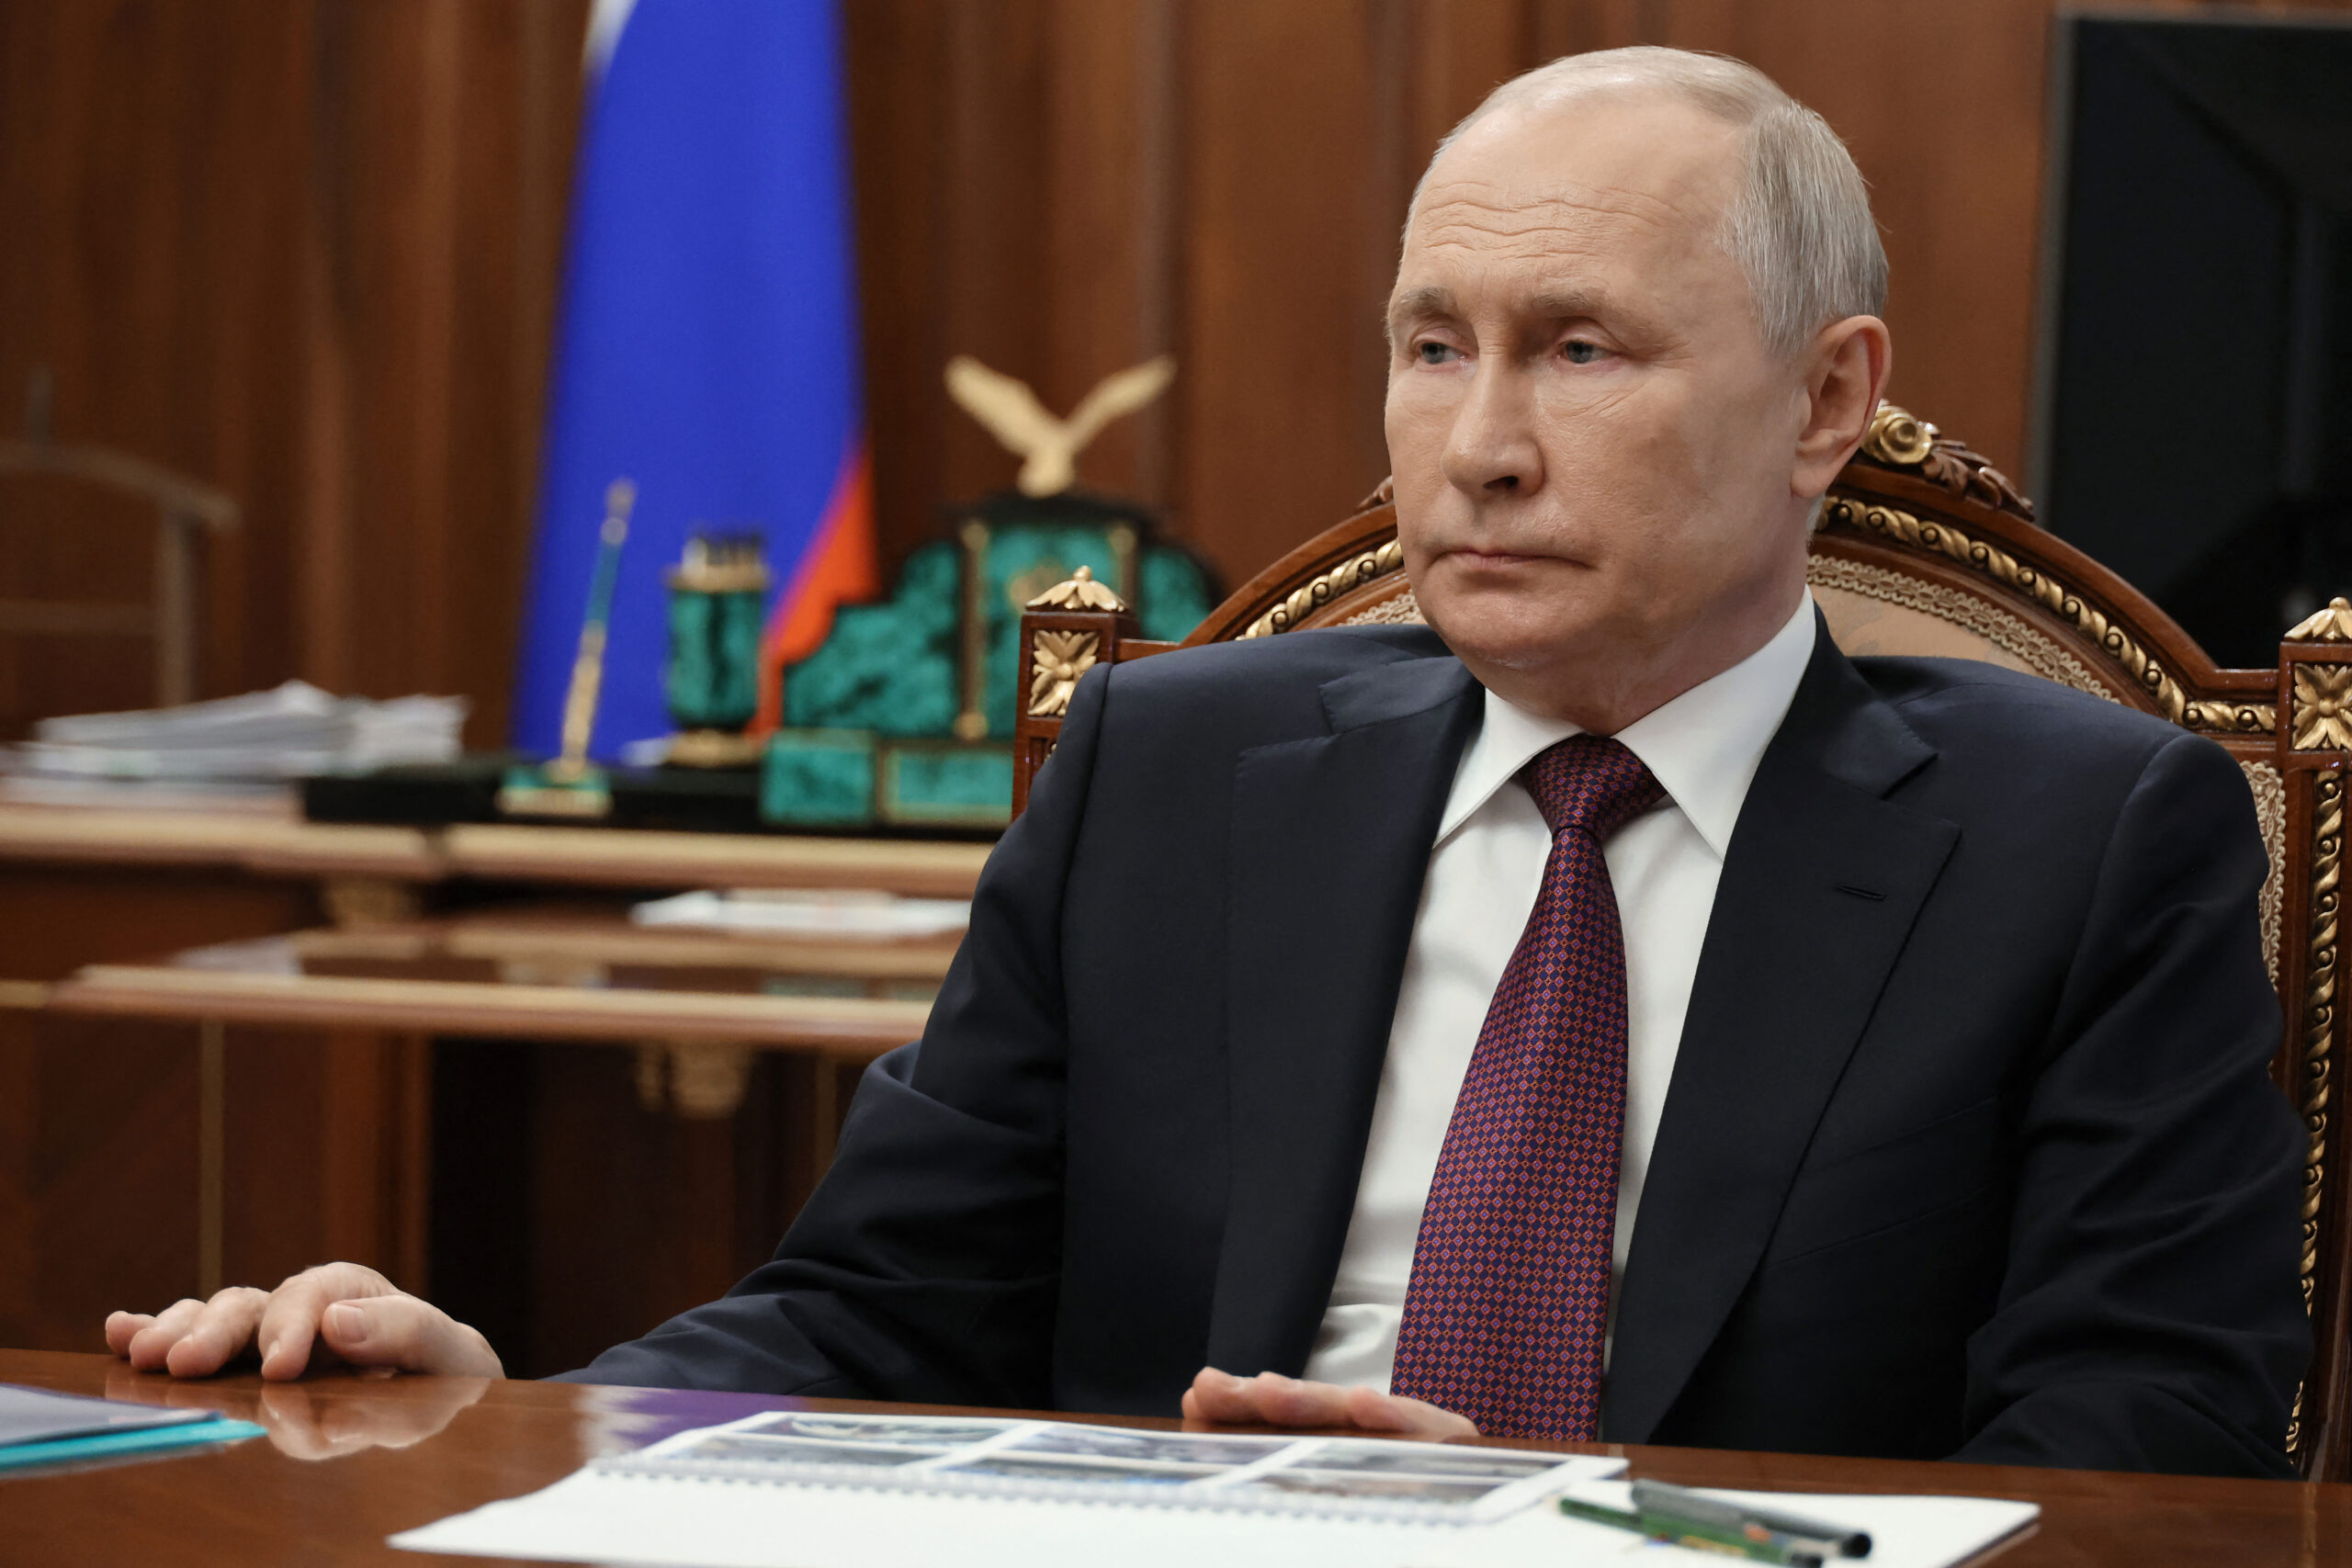 Πούτιν: Οι μισθοφόροι της Βάγκνερ πρέπει να ορκιστούν πίστη στο ρωσικό κράτος